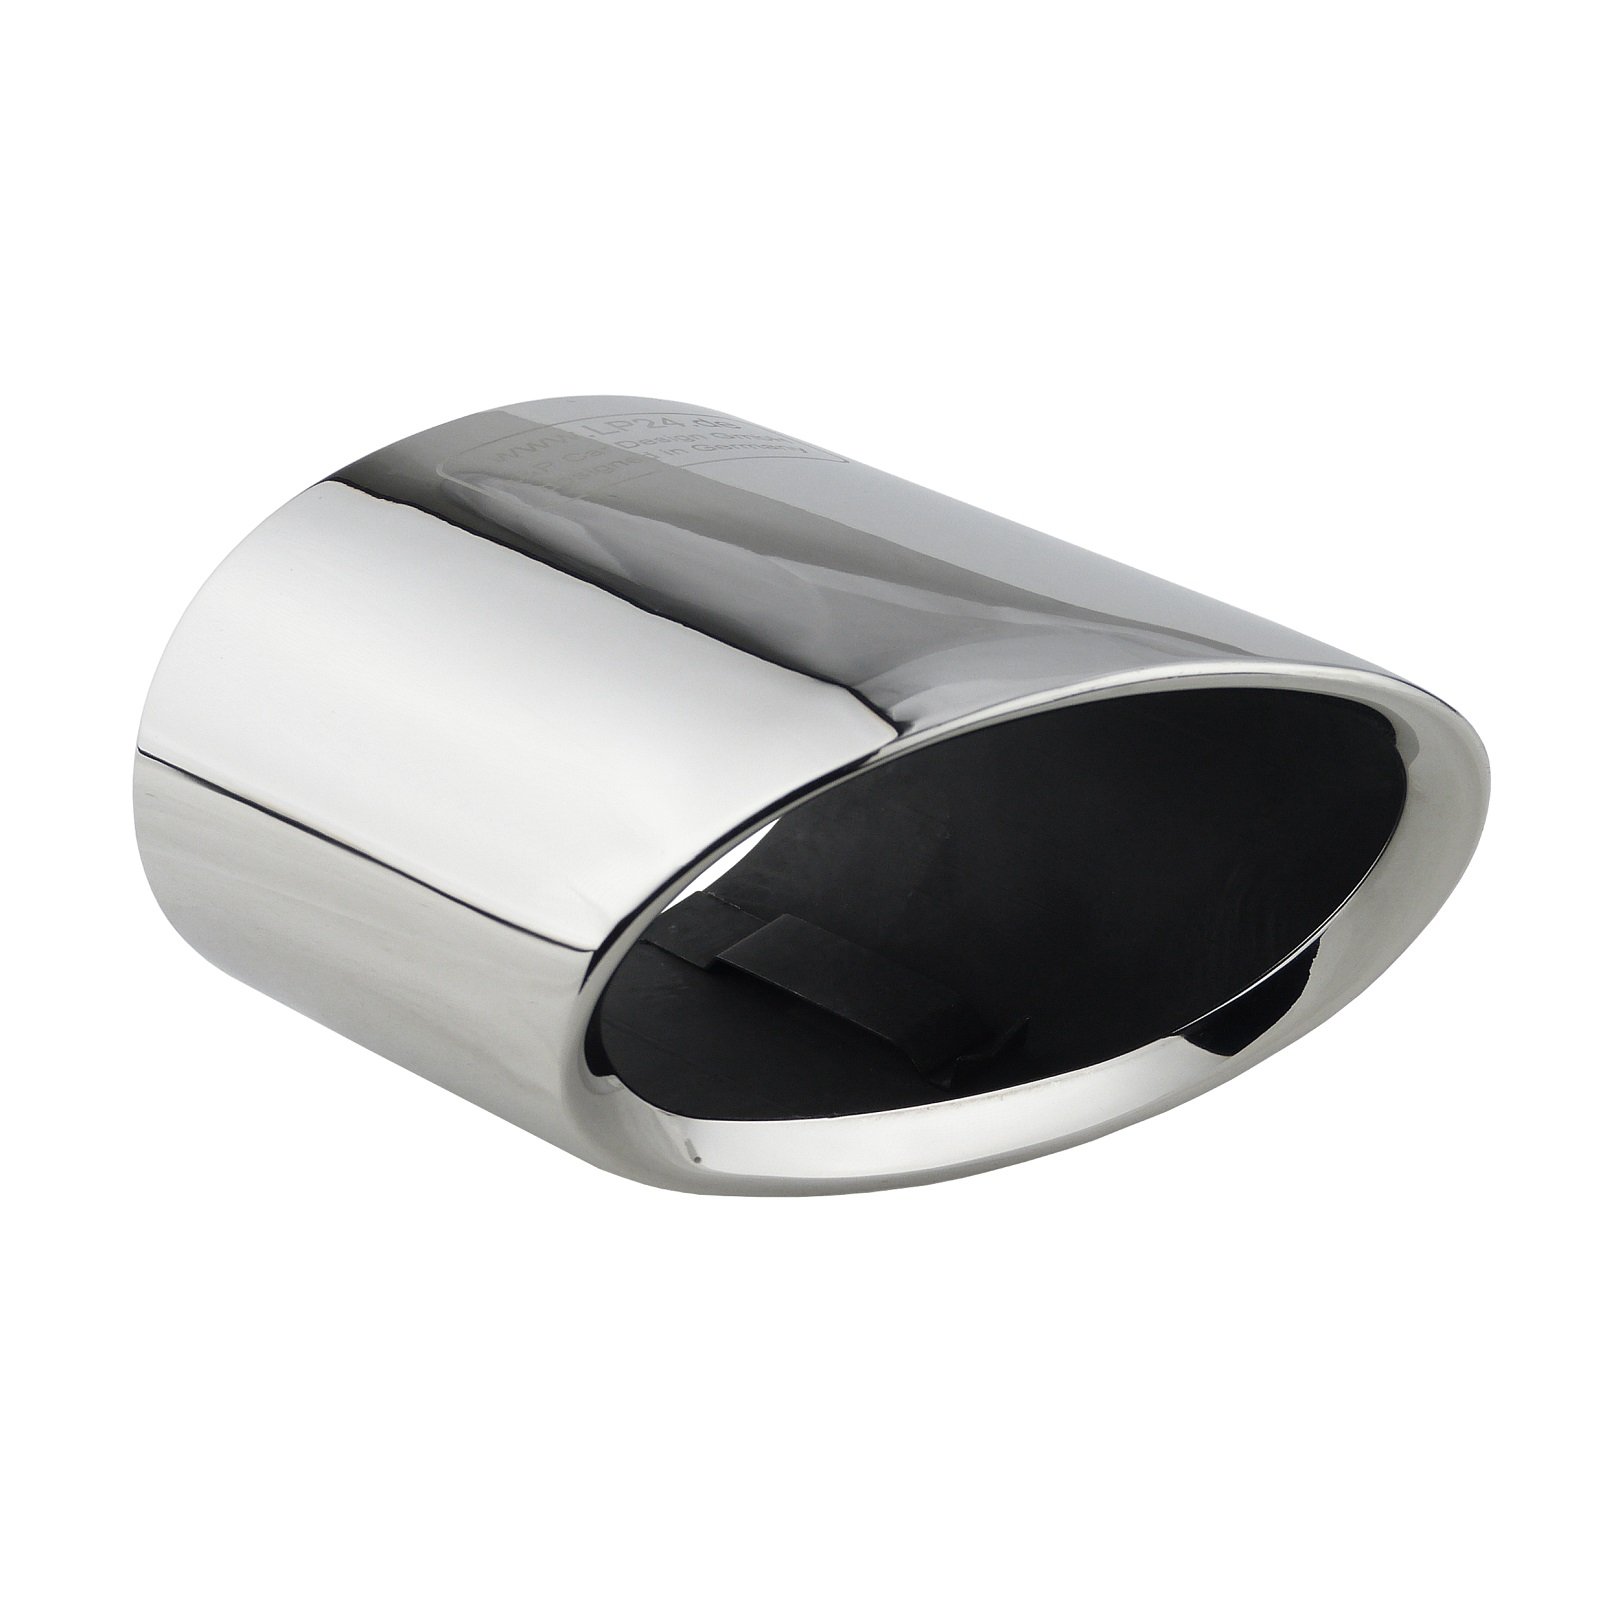 L&P A300 Auspuffblende Endrohrblende Edelstahl spiegel poliert Chrom Plug Play Ersatzteil Endrohrblenden Silber kompatibel mit 1er e81 e82 e87 e88 LCI X1 e84 Auspuff Endrohr Blende von L & P Car Design